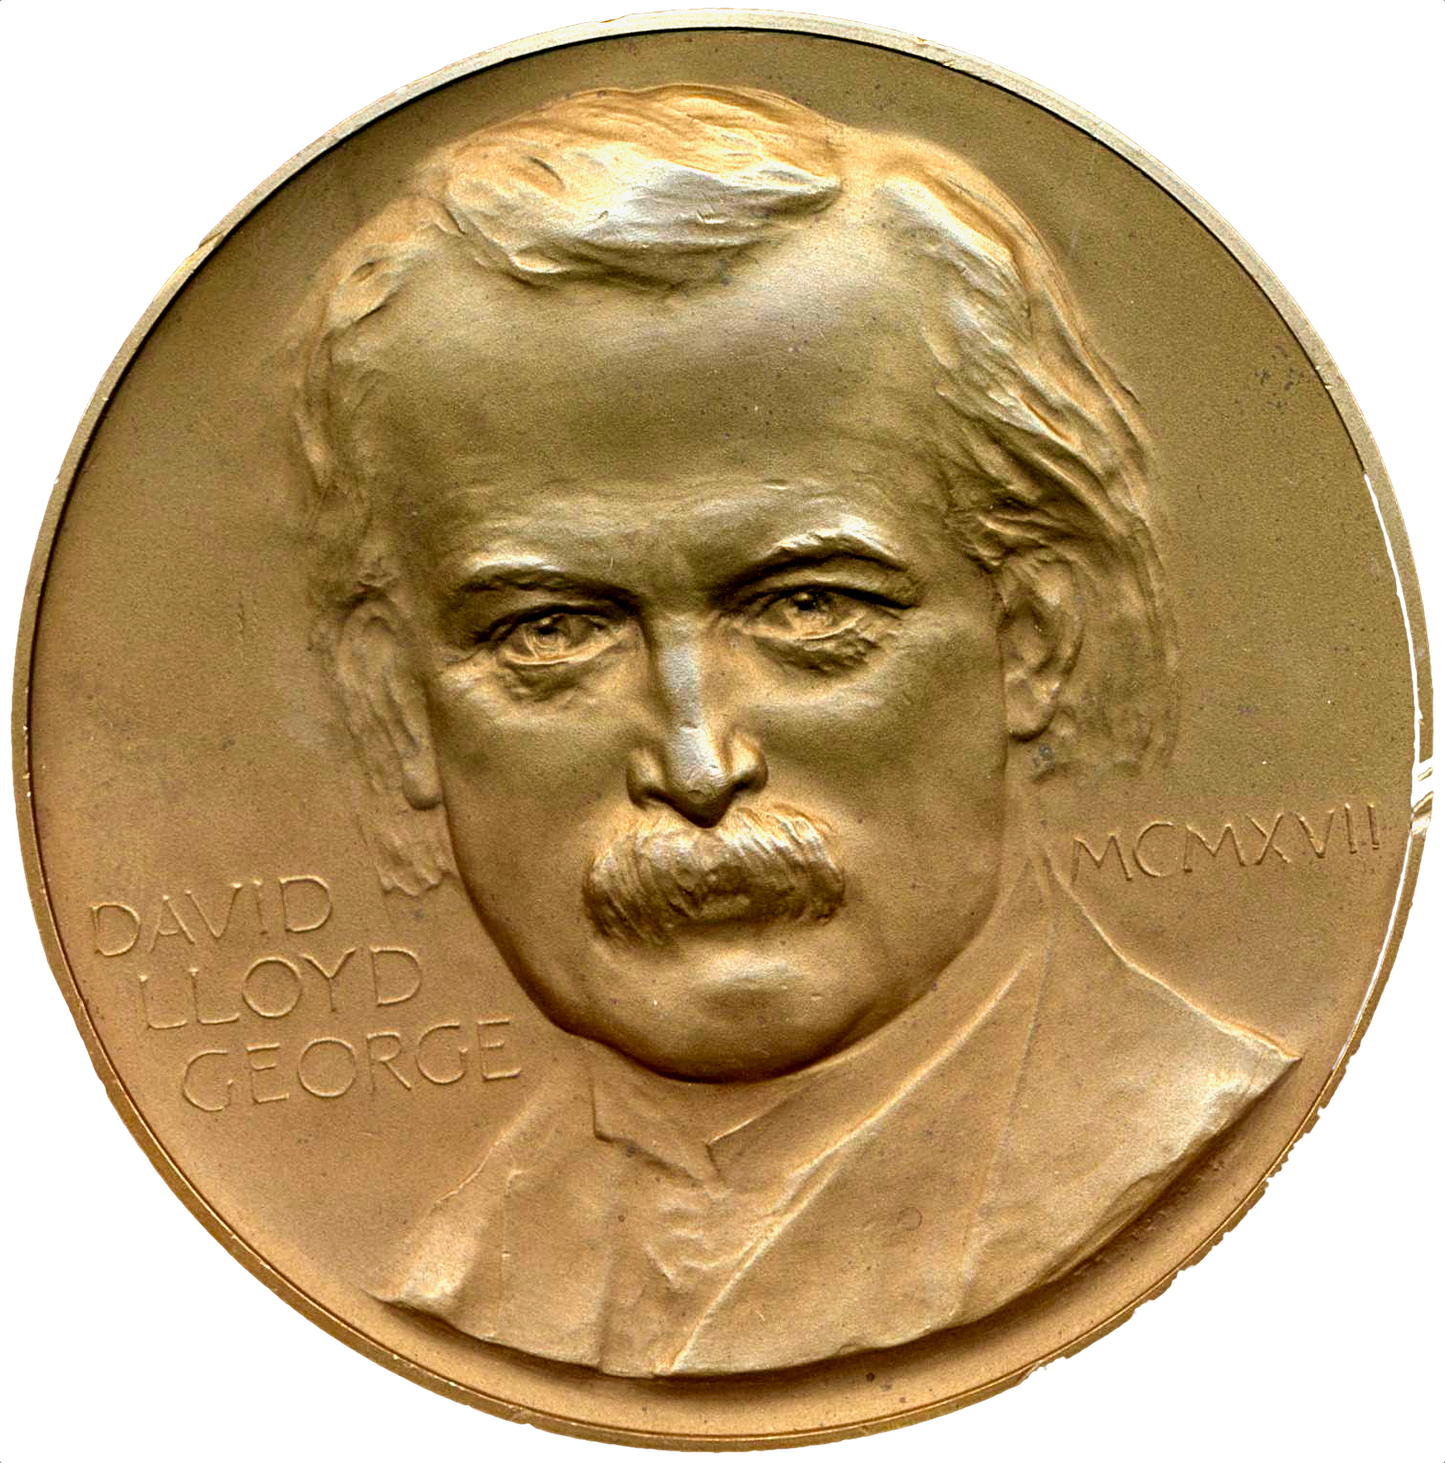 1917 David Lloyd George 64mm bronze medal by Frank Bowcher BHM 4130 E1959 NEF/EF